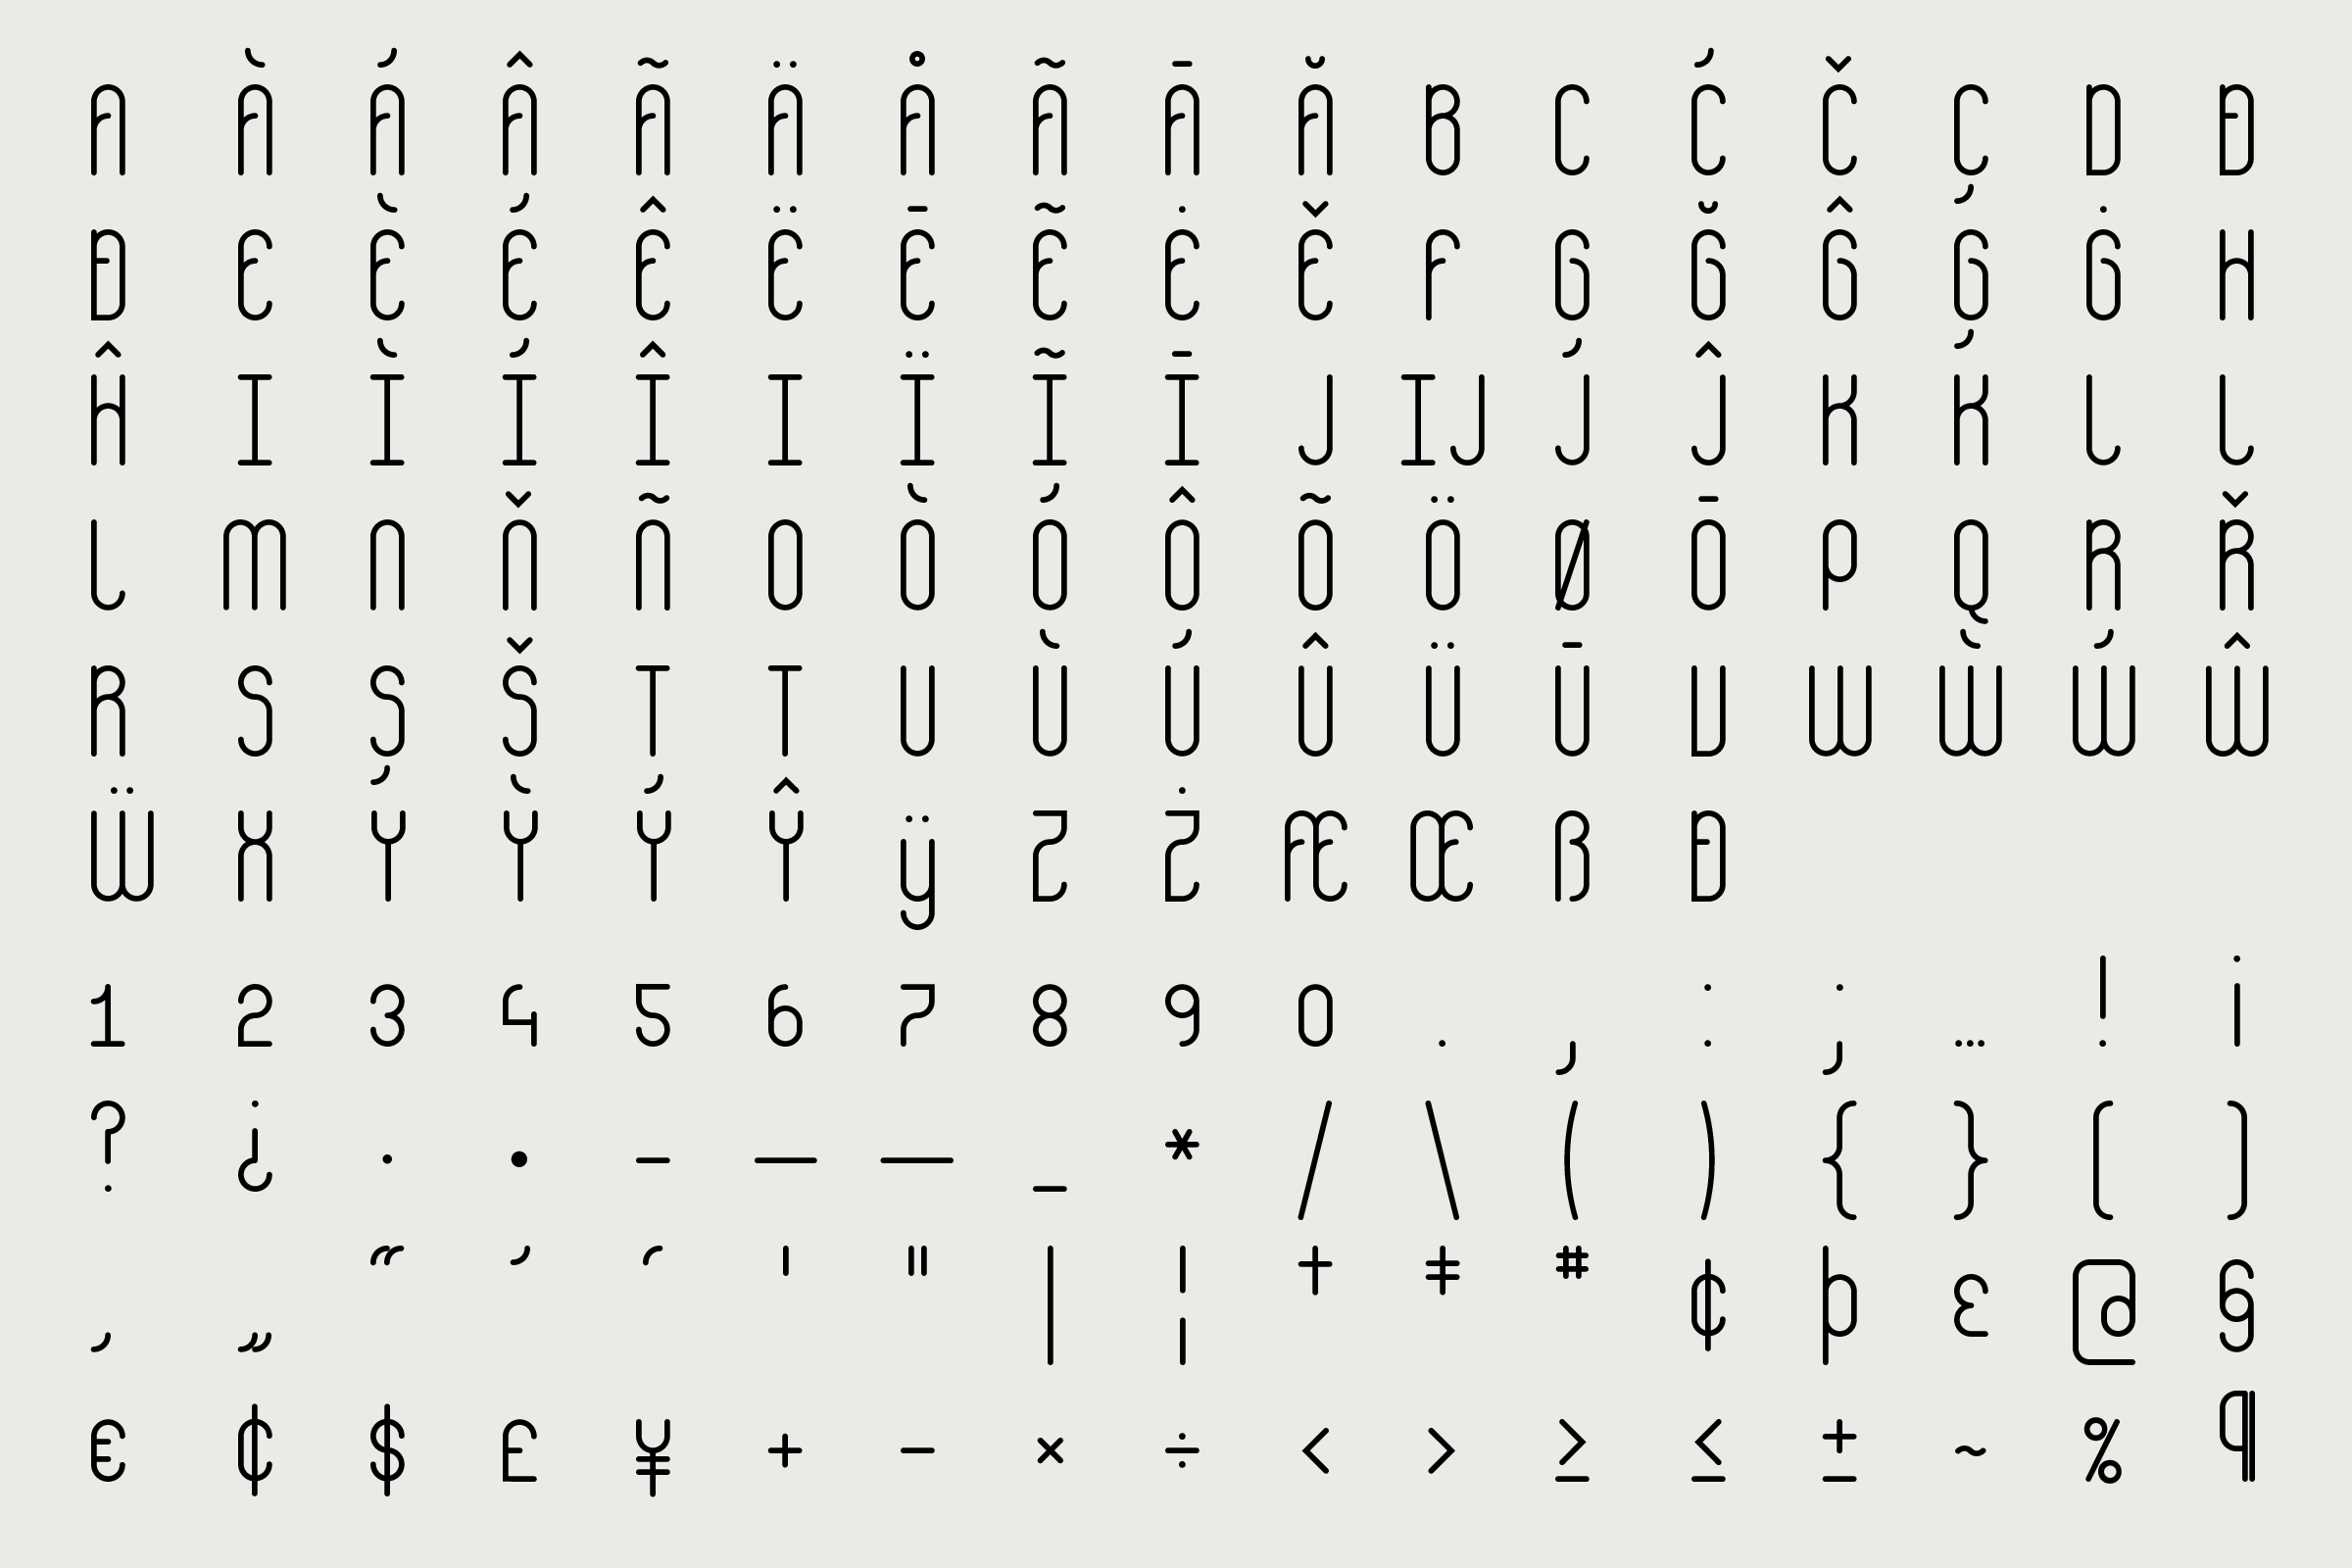 Gebr. Silvestri Typeface – GS_2014